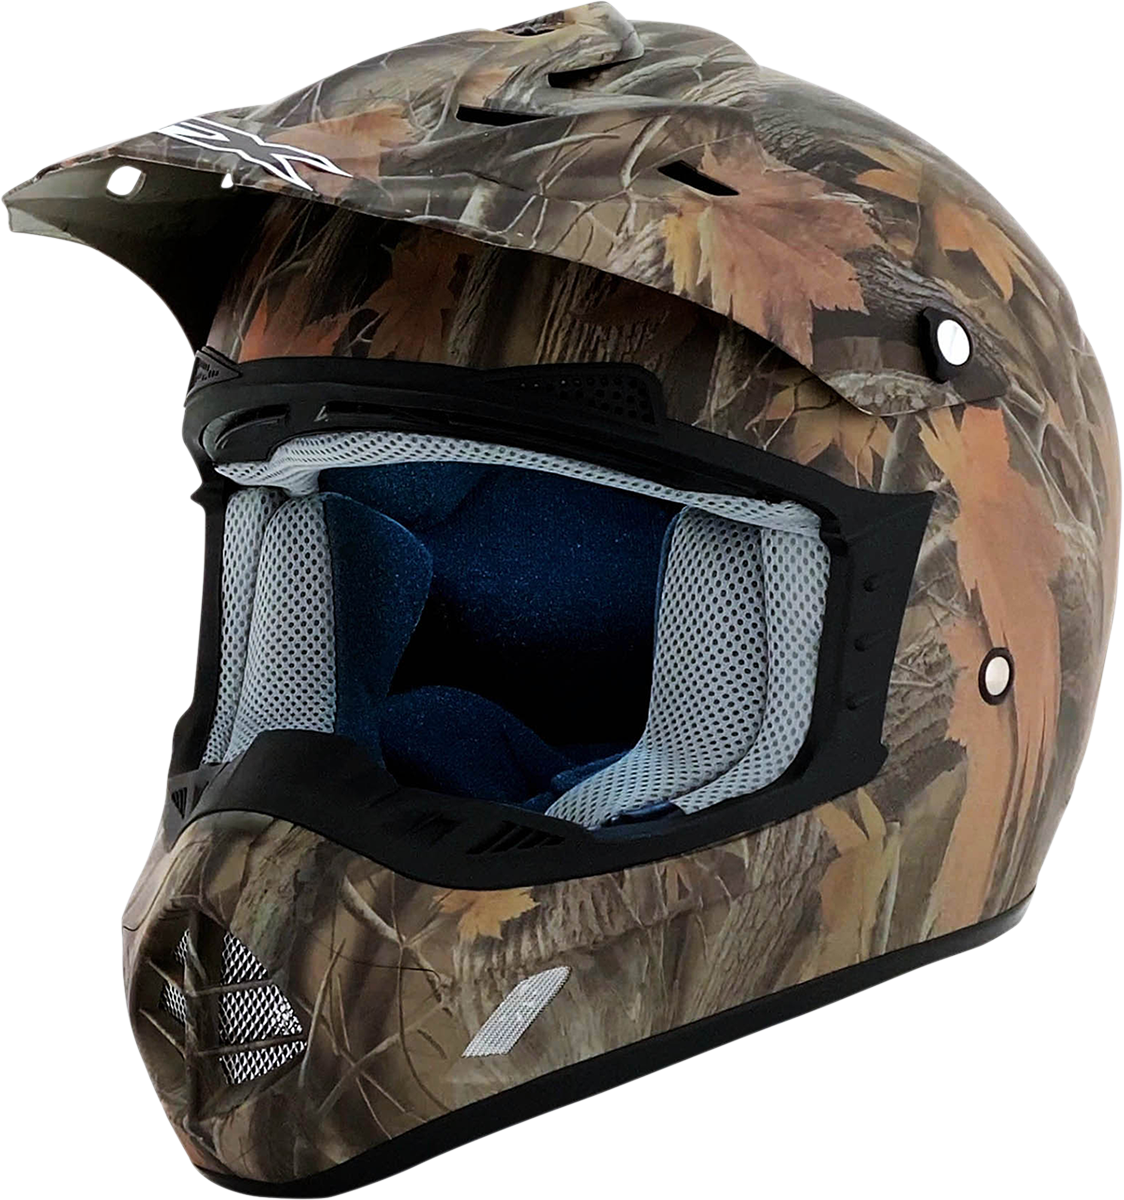 AFX FX-17 Helmet - Camo - XL 0110-1820